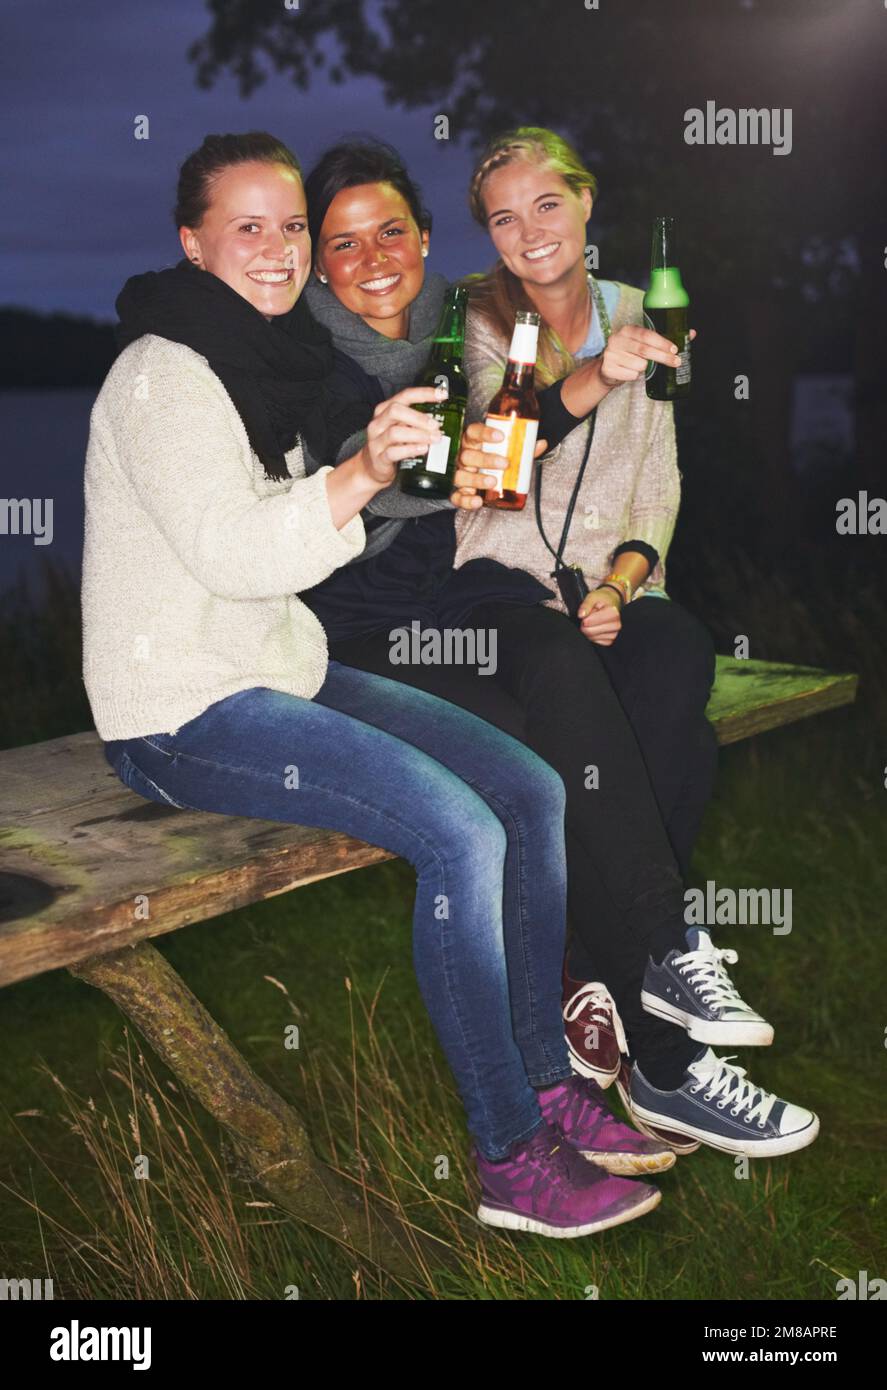 Bei momenti con gli amici. tre amici che parlano e bevono di notte in un festival di musica all'aperto. Foto Stock